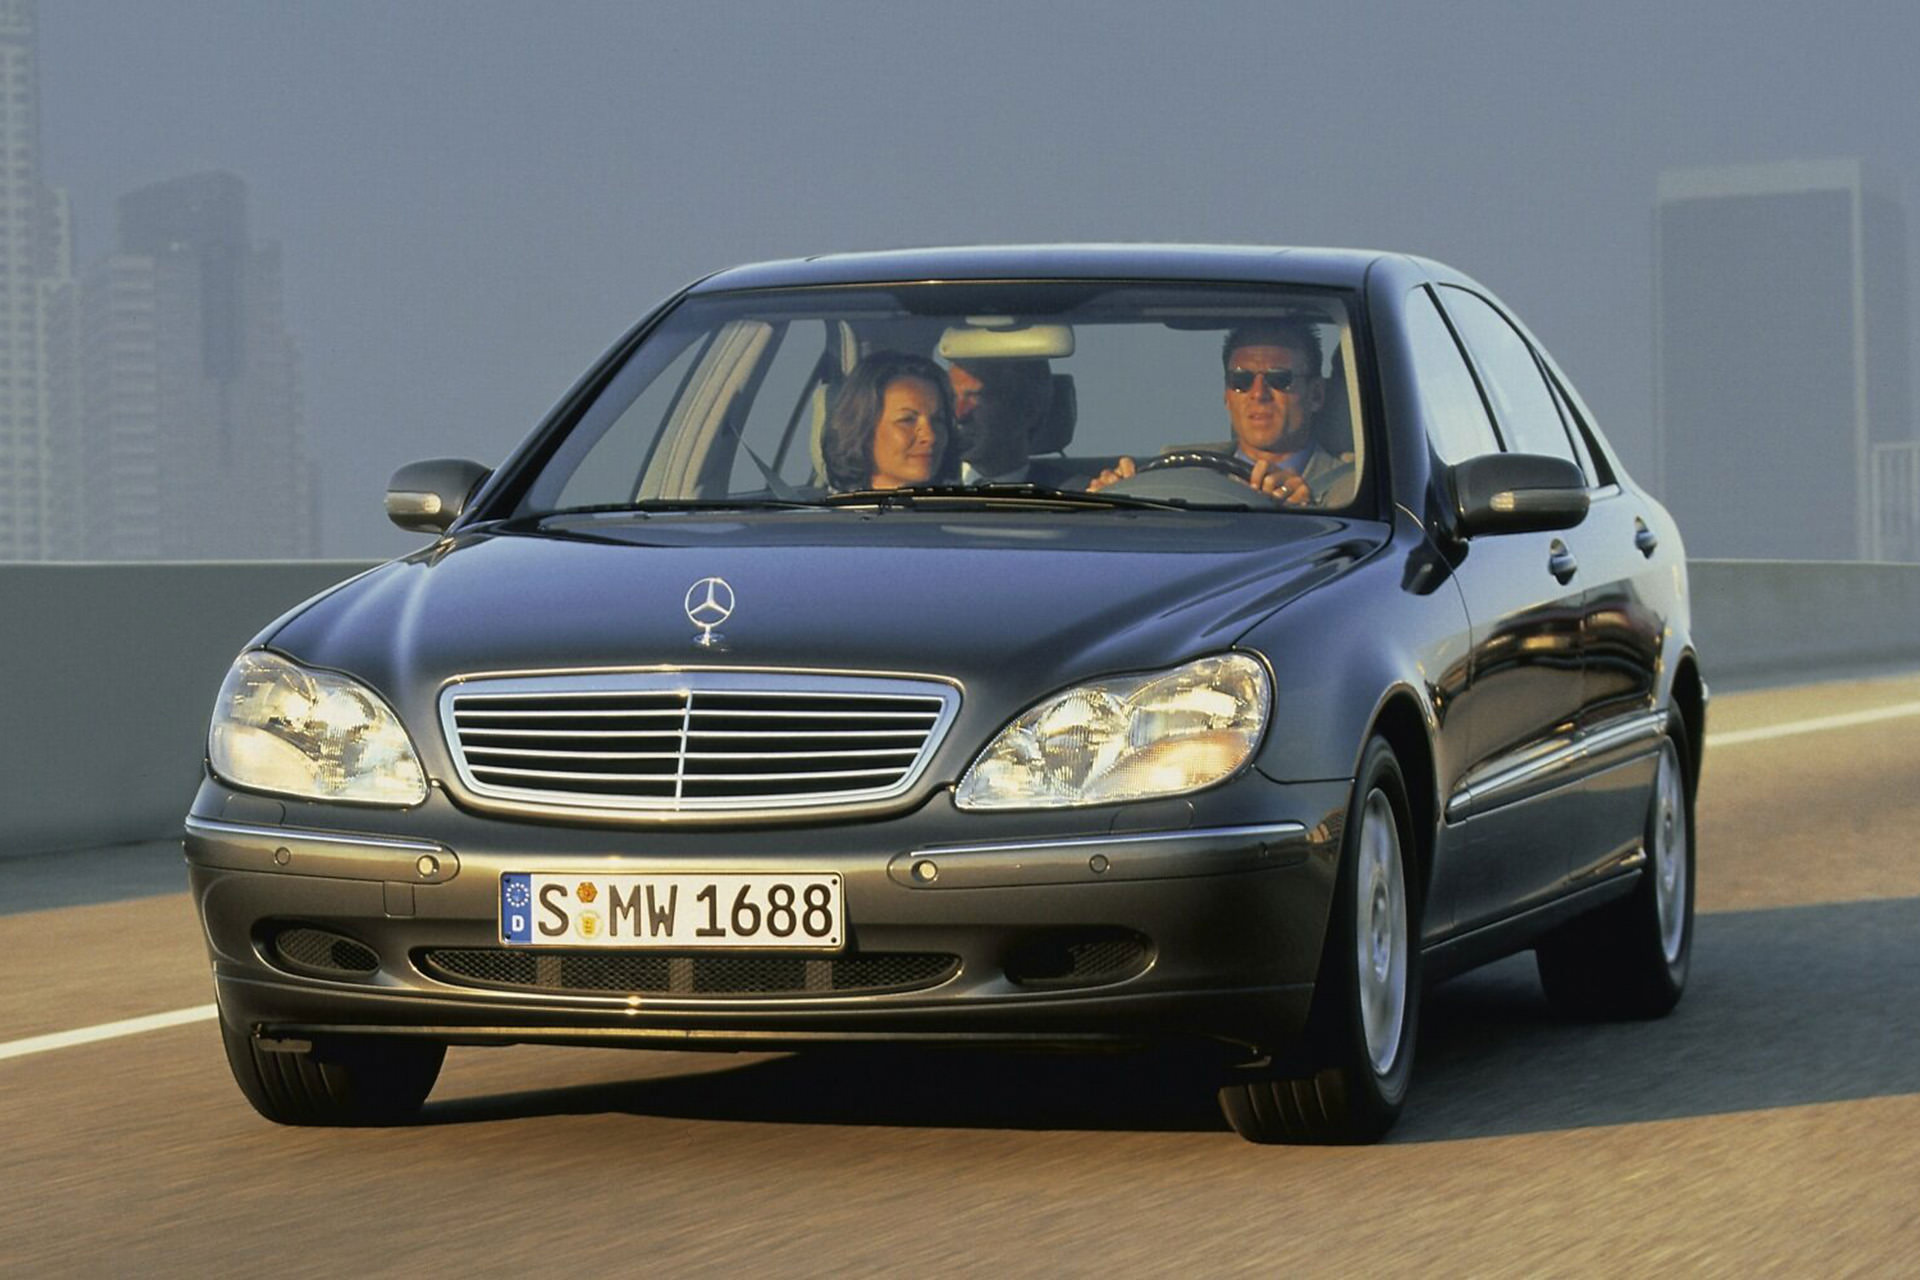 نسل W220 خودرو مرسدس بنز کلاس اس / Mercedes-Benz S-Class